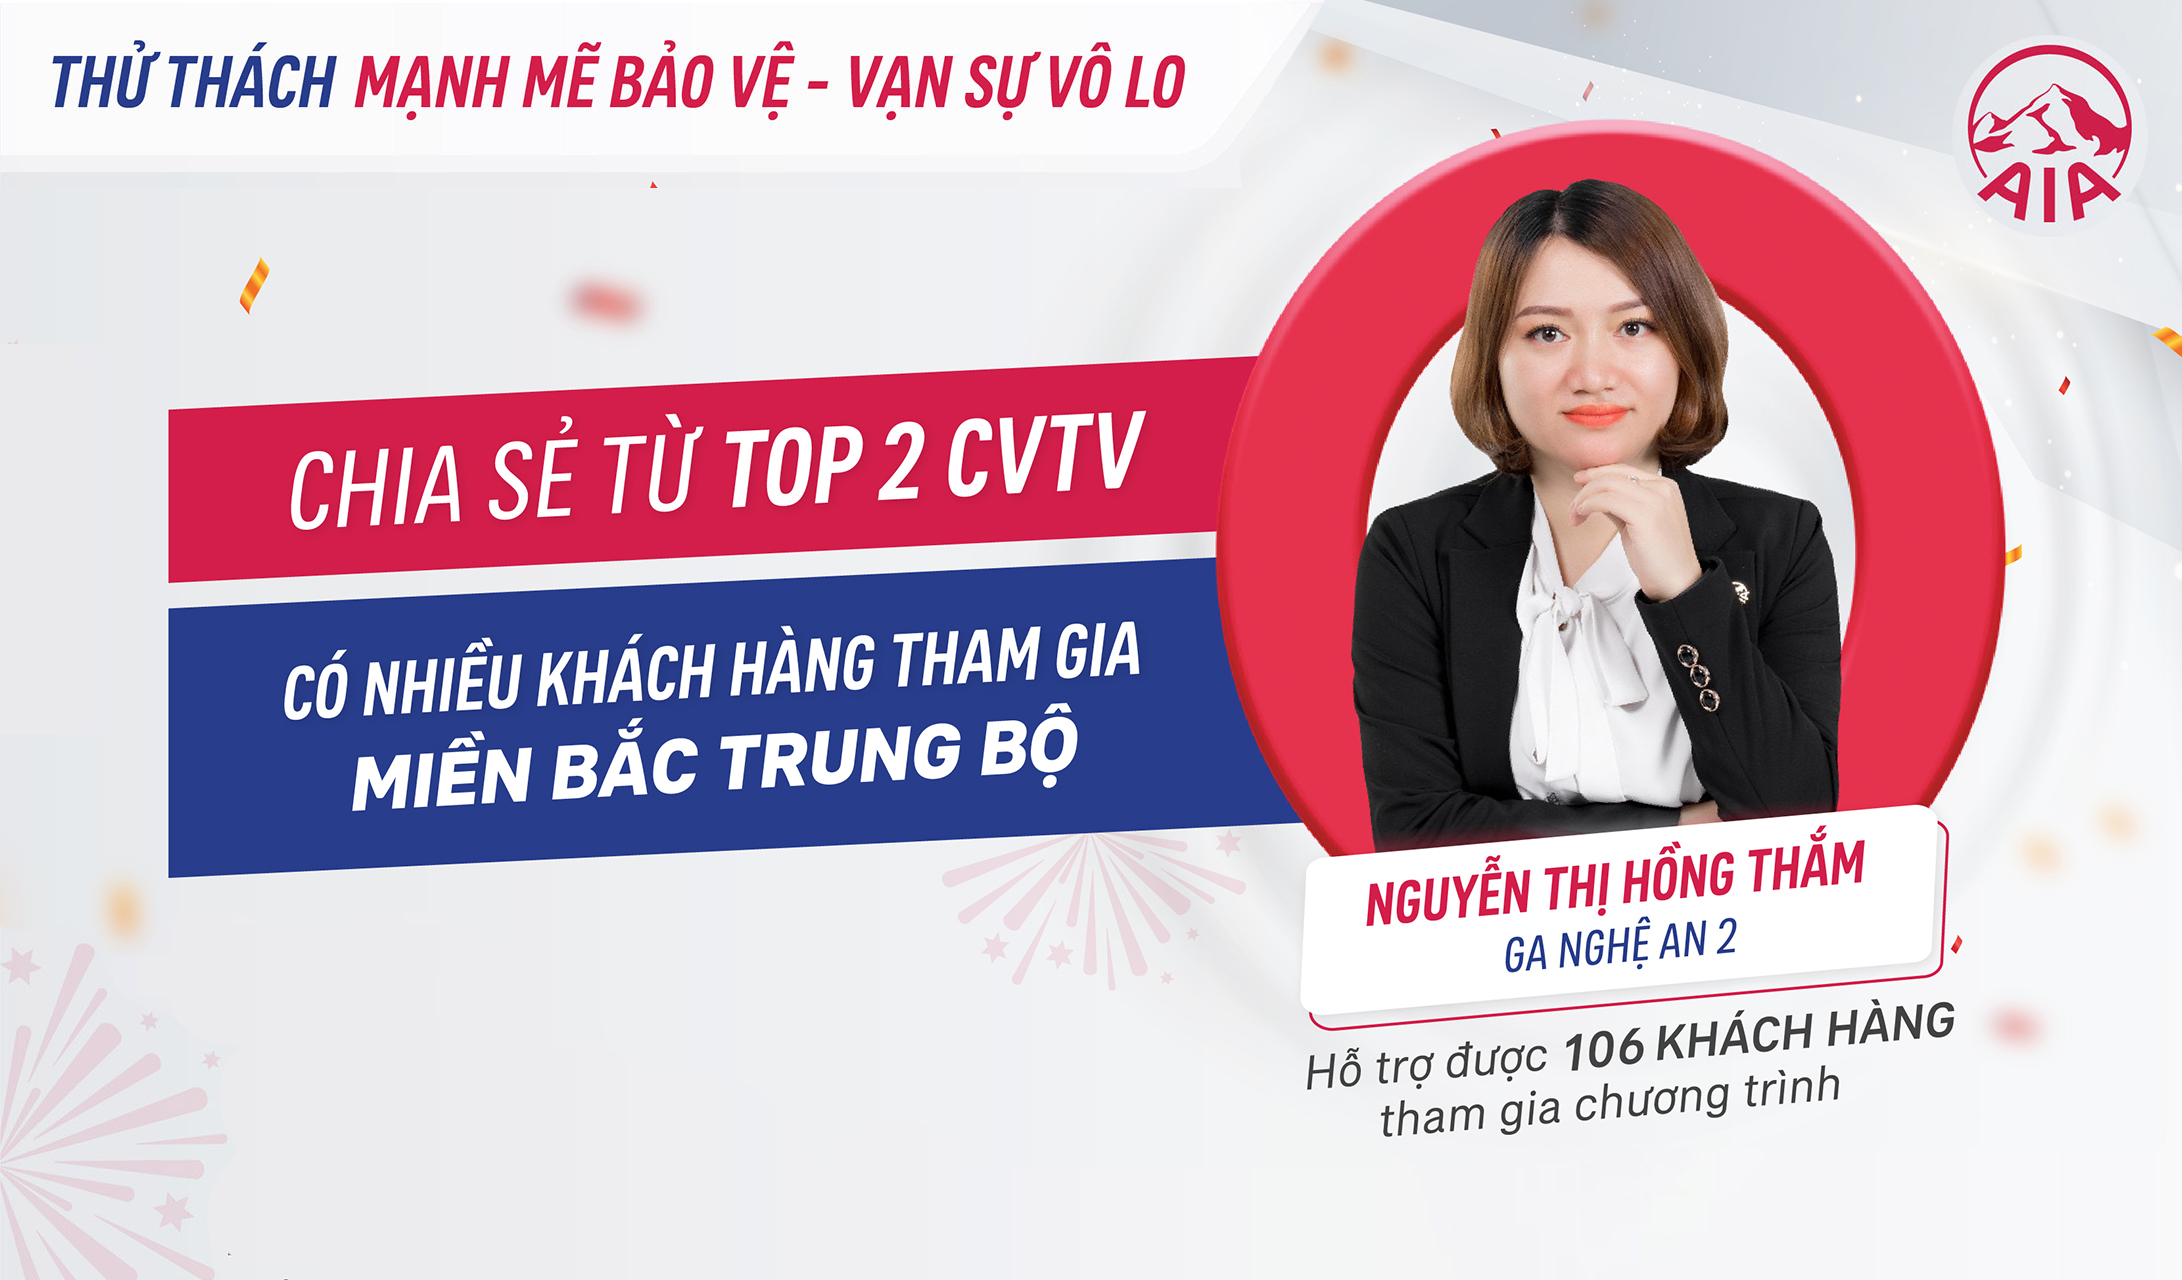 Chia sẻ từ Top 2 CVTV có nhiều khách hàng tham gia – KV Bắc Trung Bộ, GA Nghệ An 2